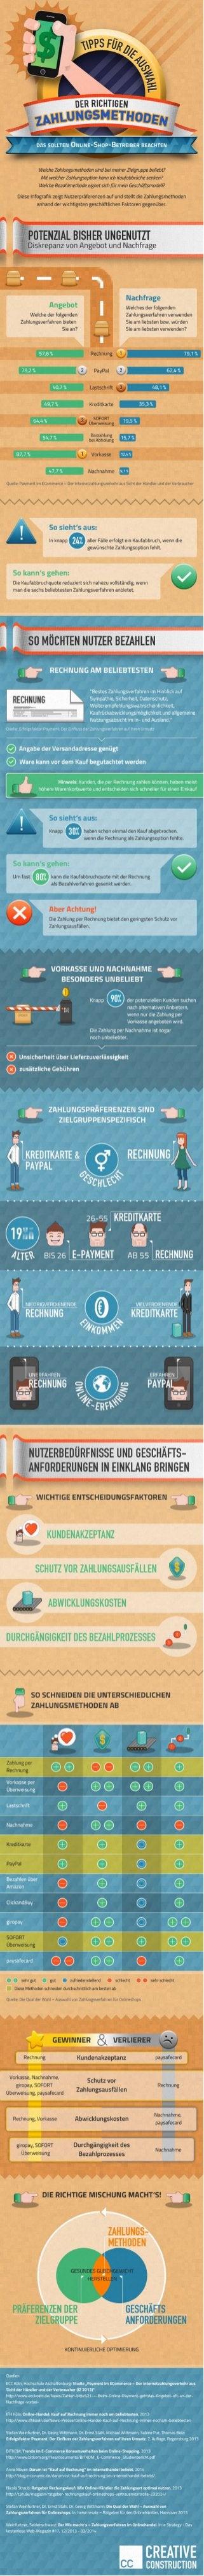 Richtige Zahlungsmethoden im E-Commerce: Kaufentscheidungs-Einfluss im Überblick (Infografik)